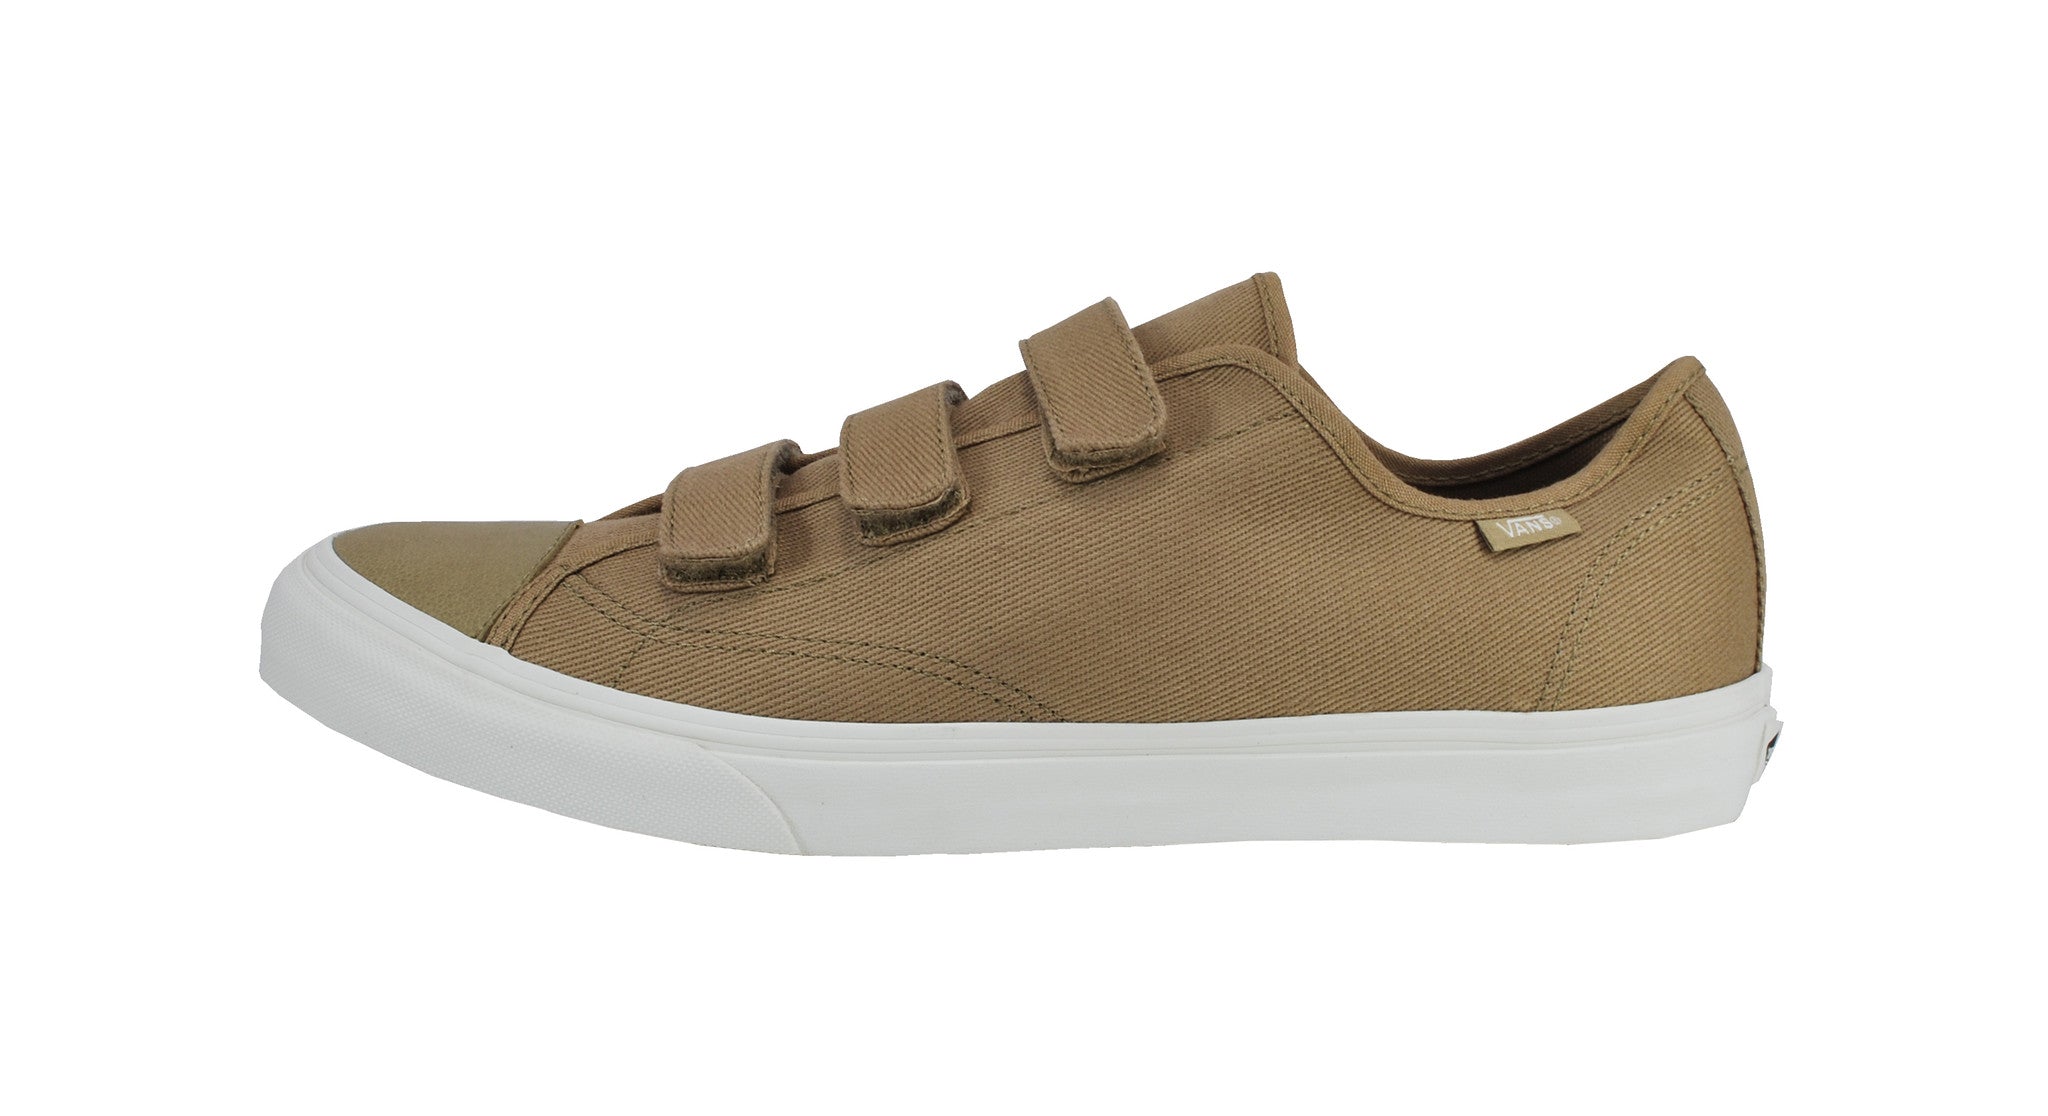 folder Kommuner kondensator Vans Men Shoes Prison Issue Tan Beige Off White Strap Sneakers –  ShoeAngle.com